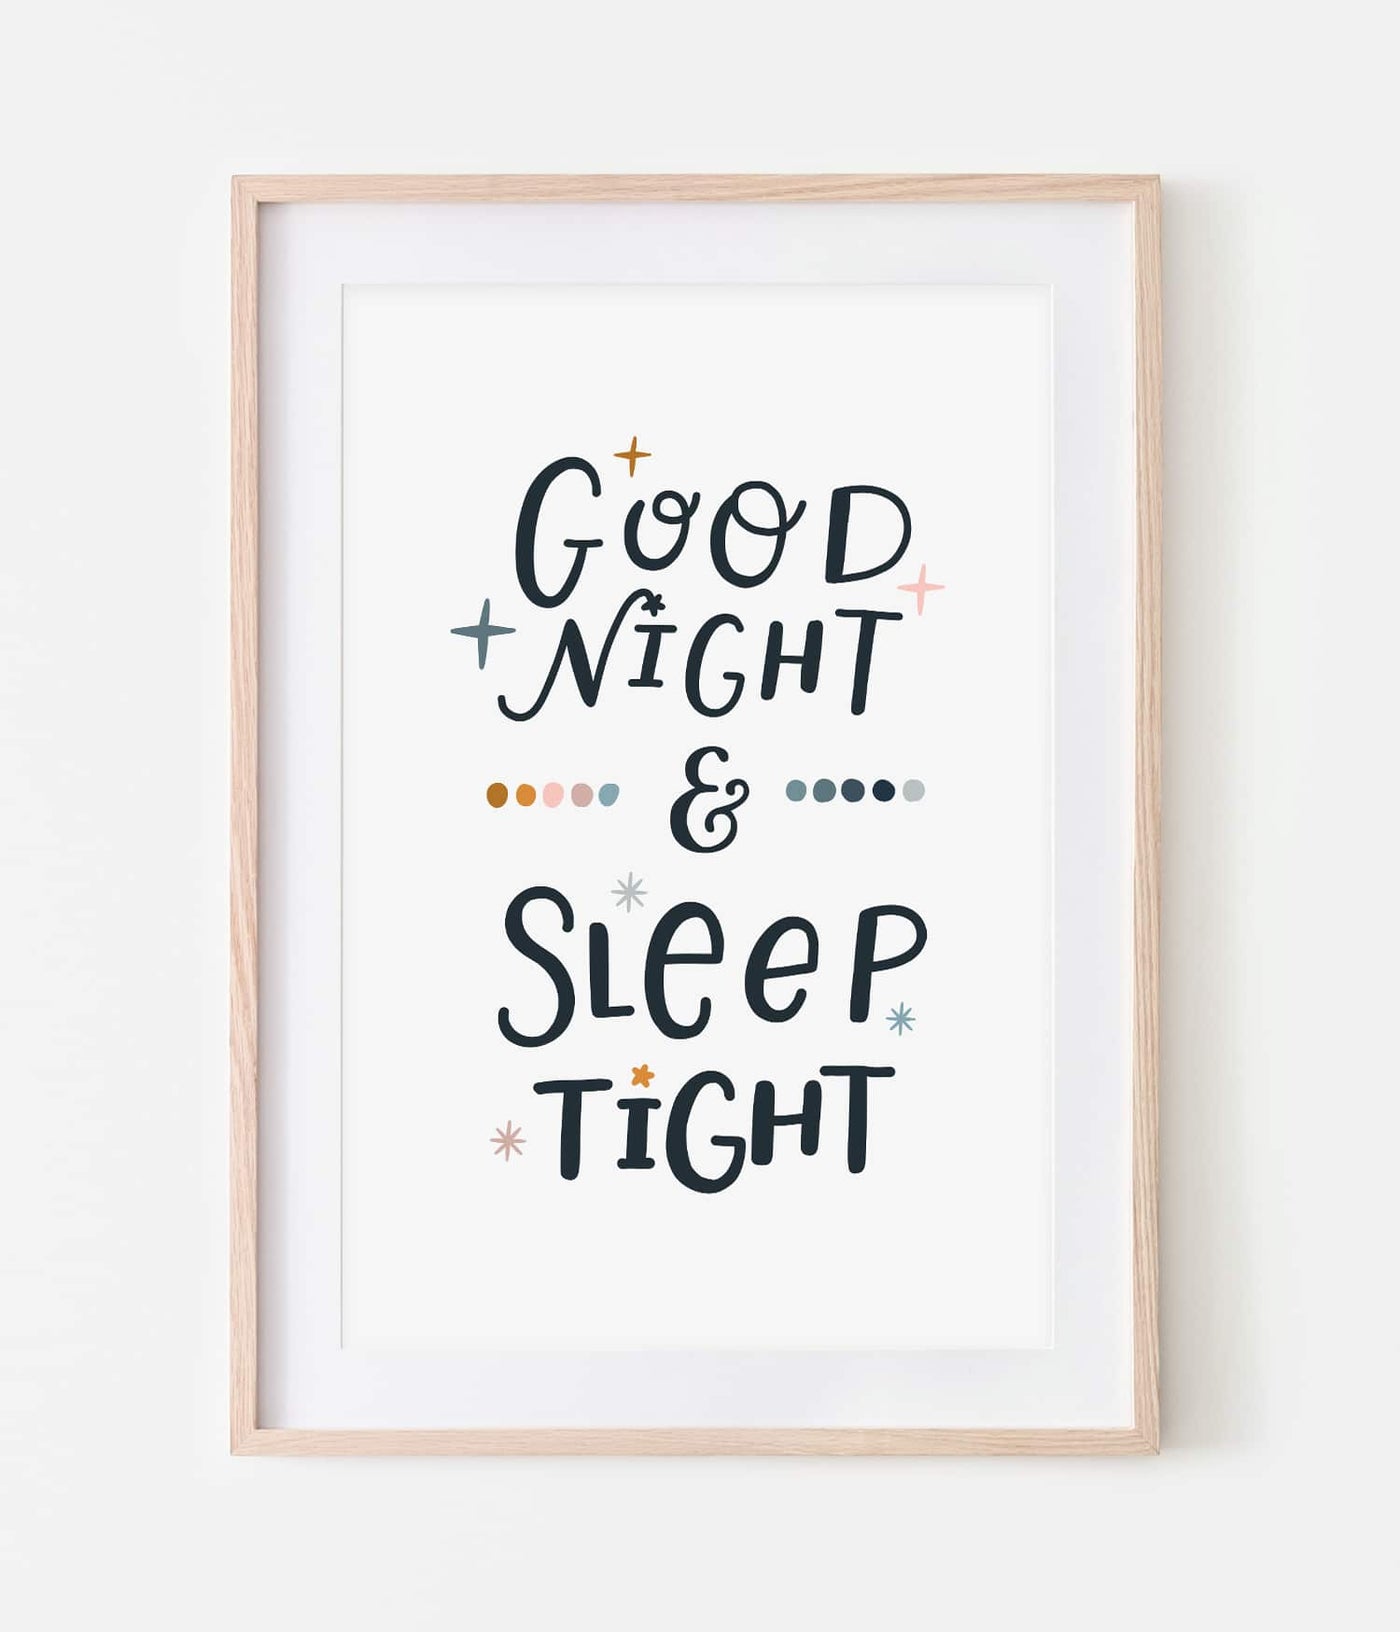 'Goodnight & Sleeptight' Print